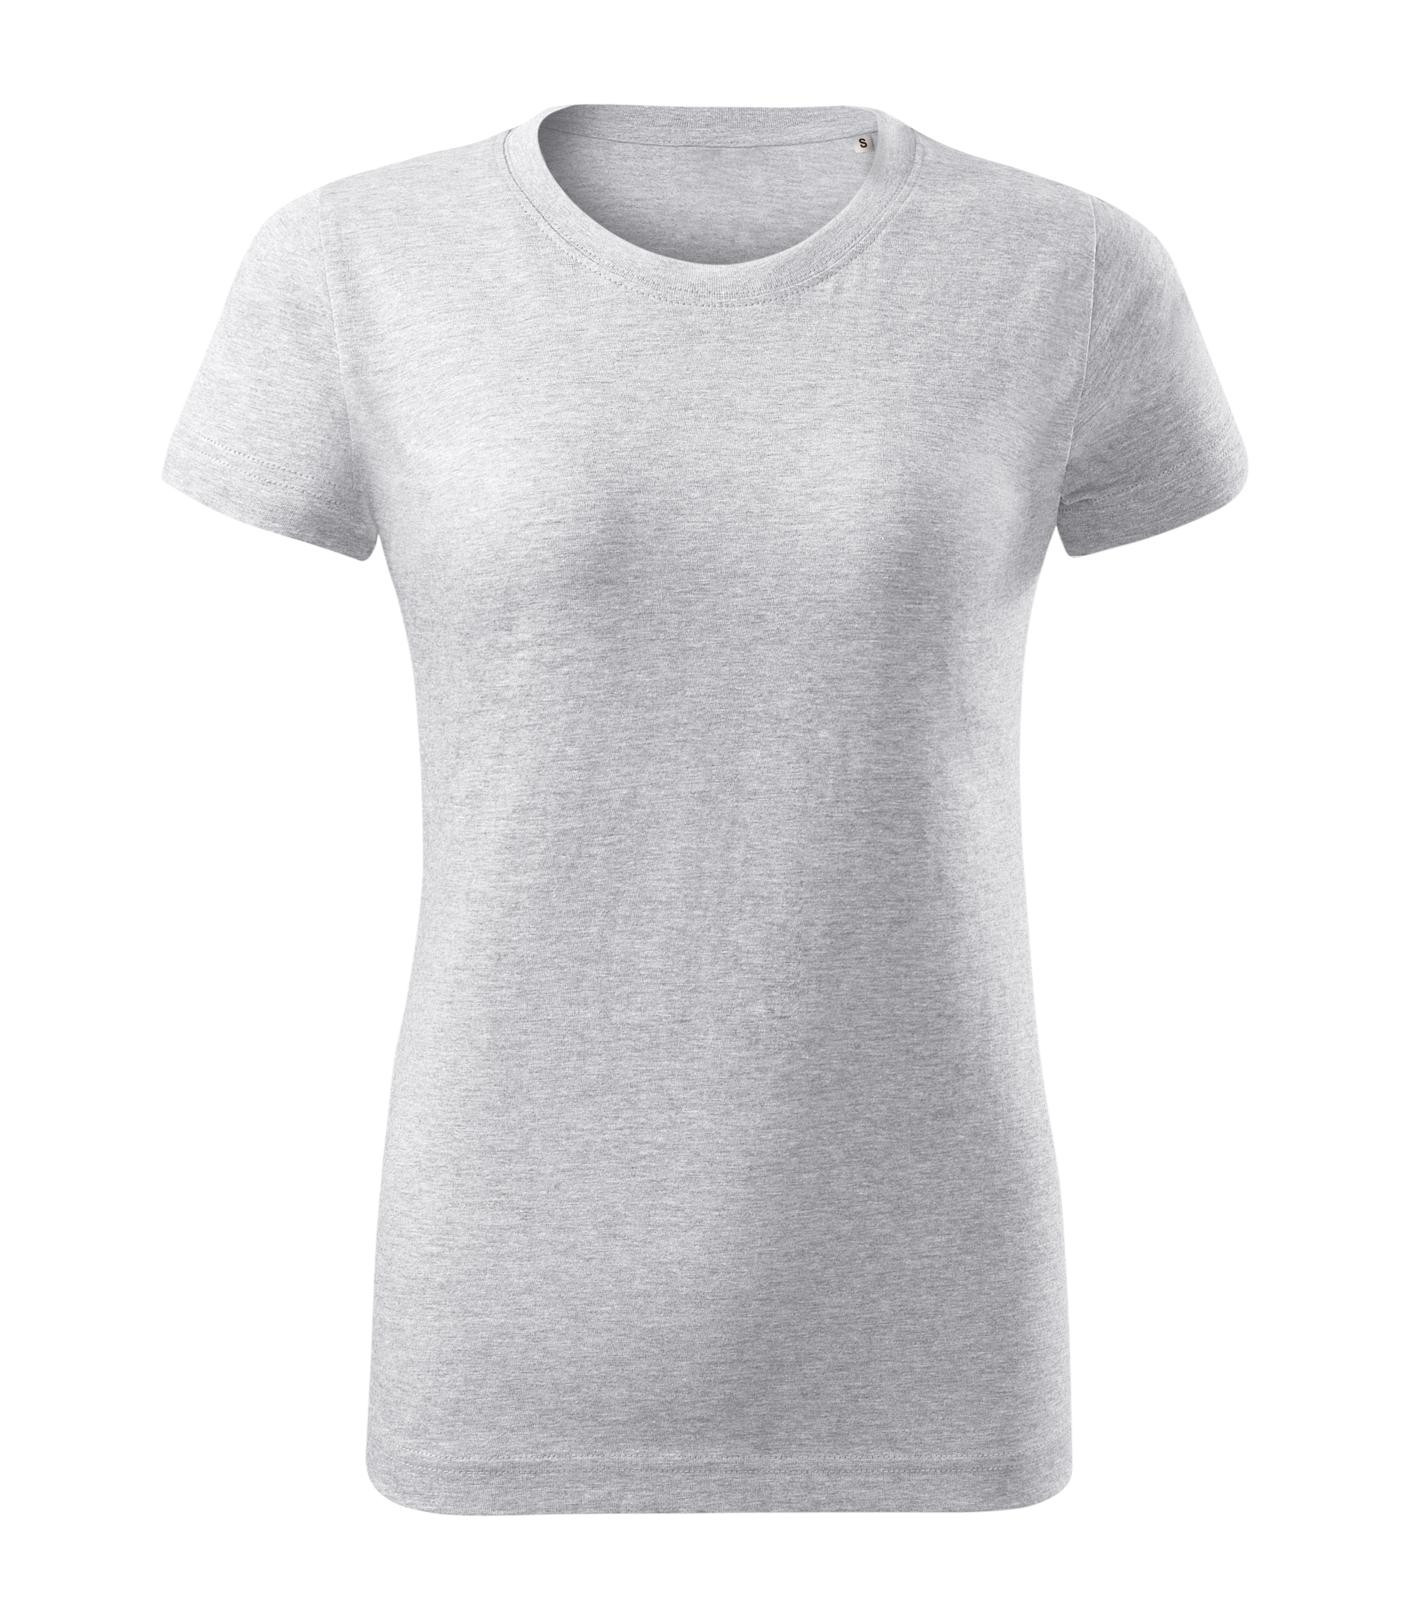 Dámske tričko Malini Basic Free F34 - veľkosť: XL, farba: svetlosivý melír